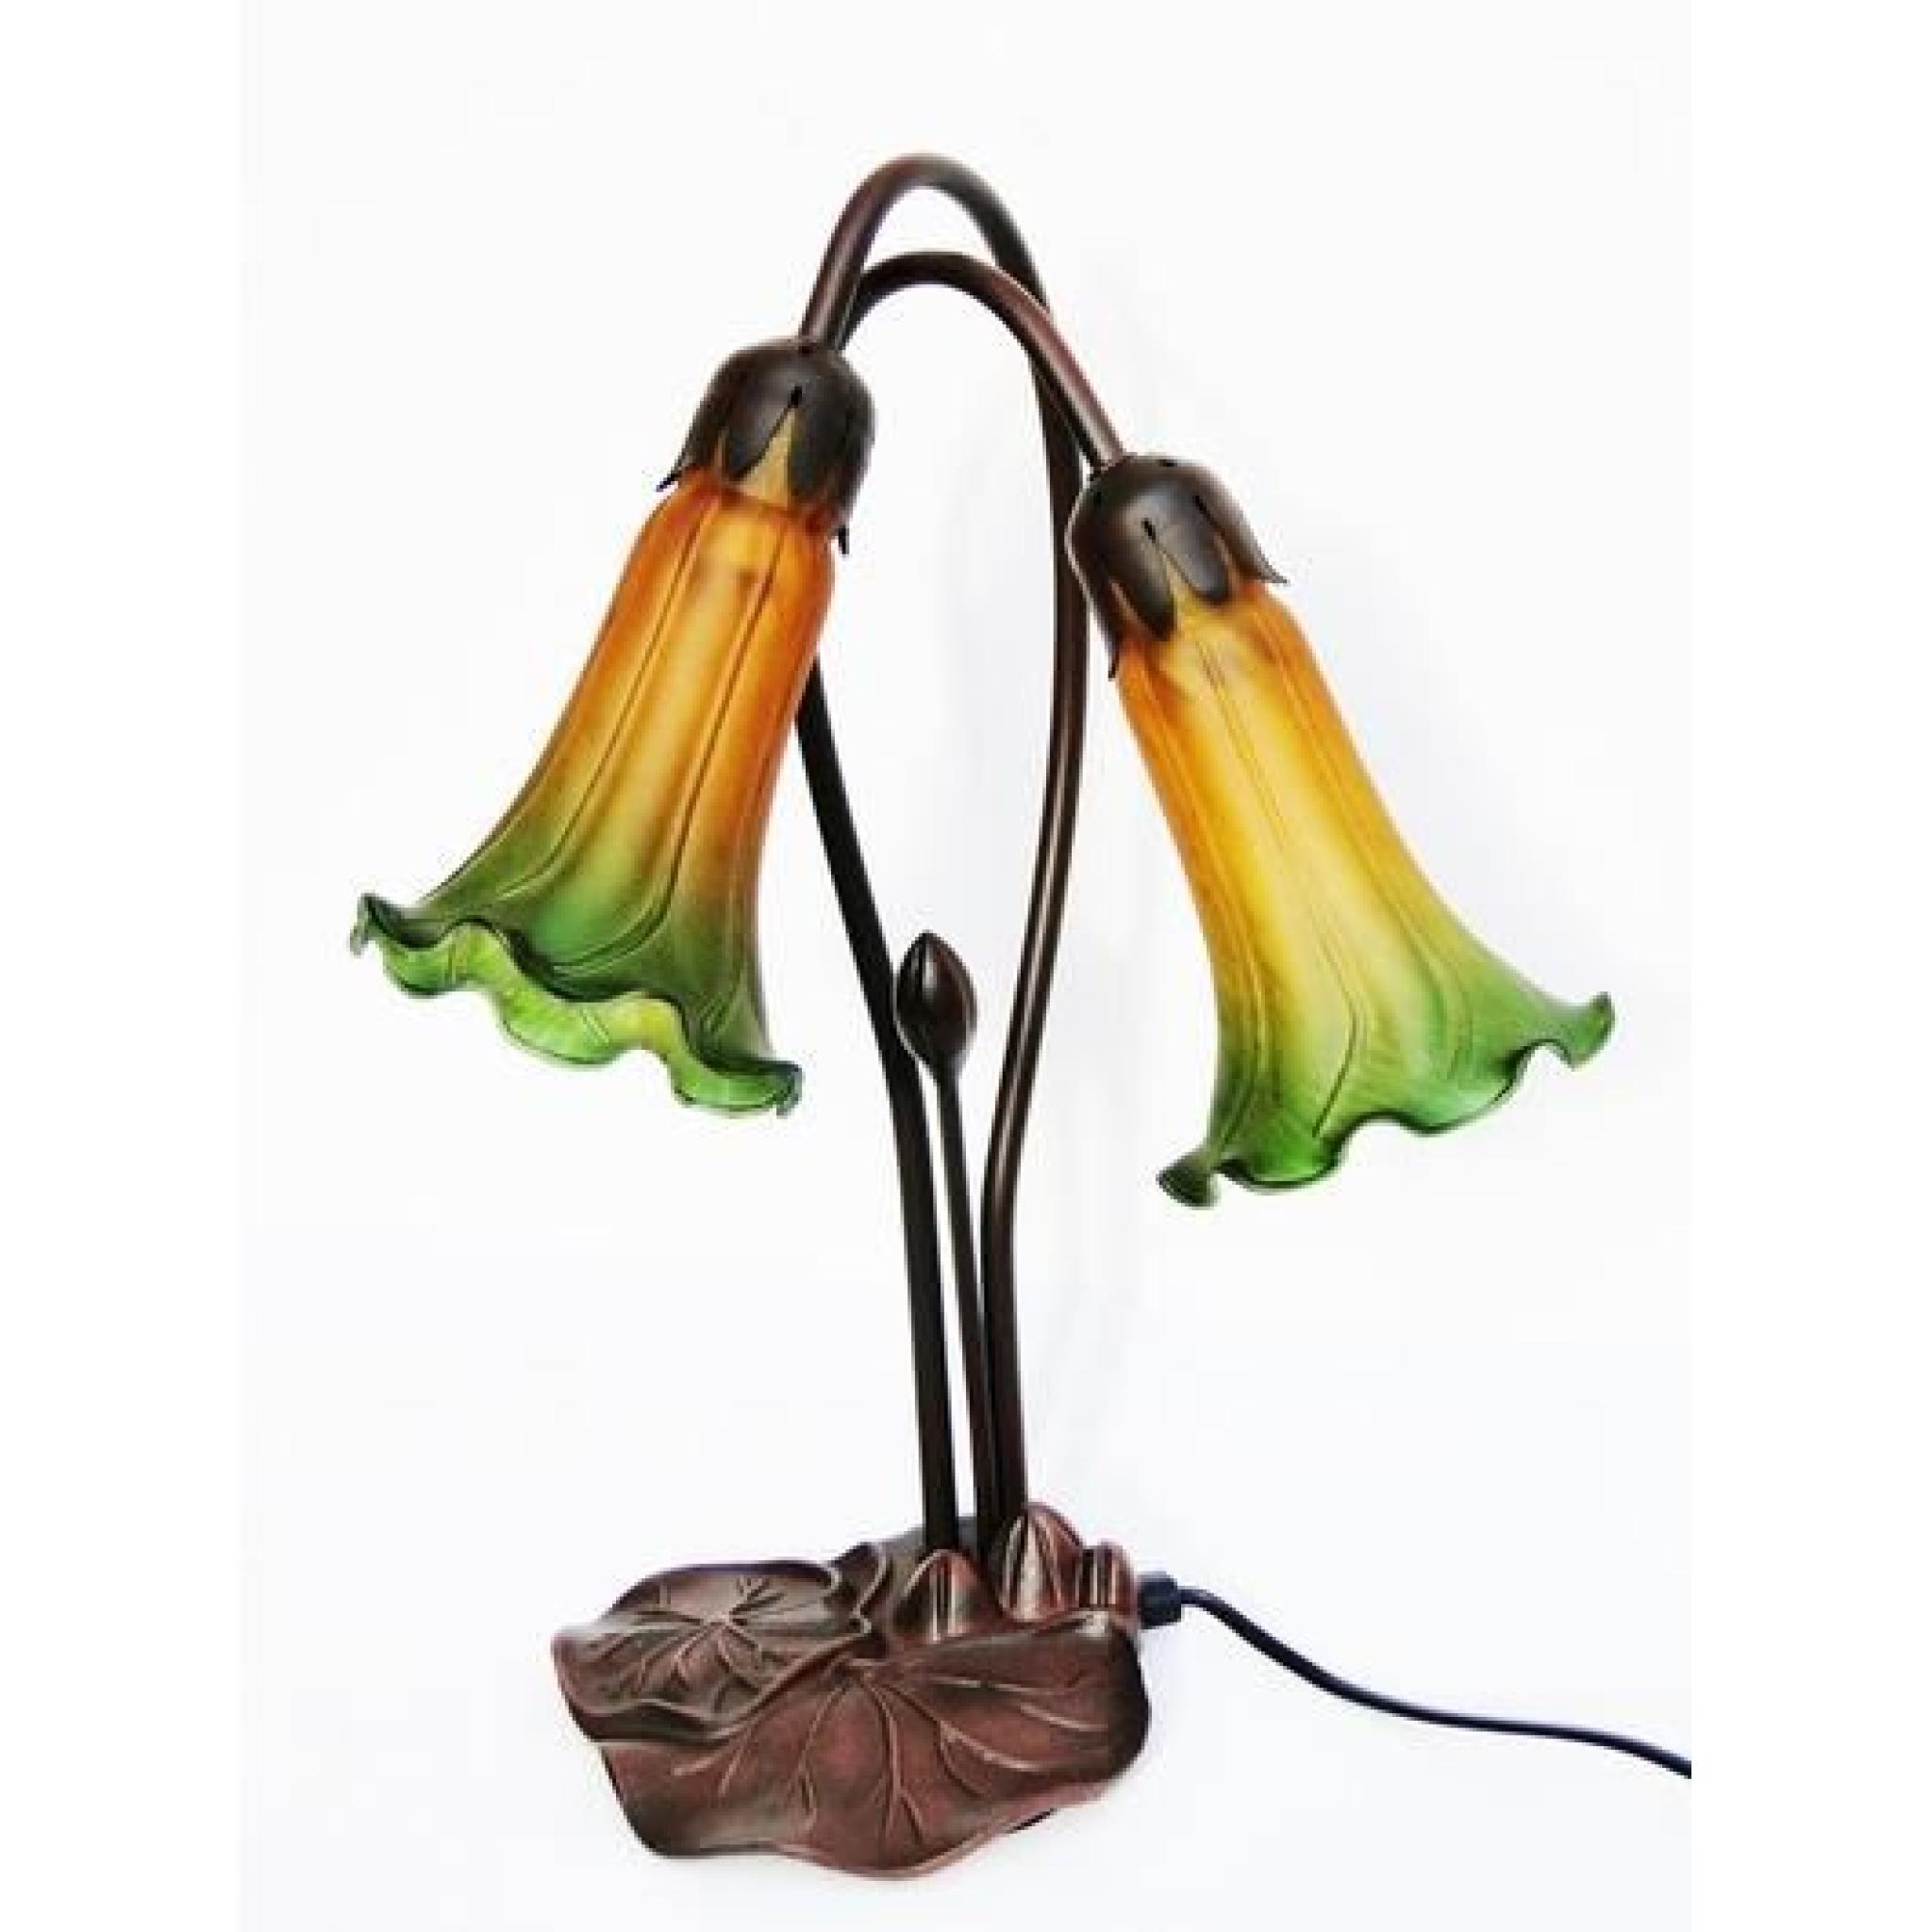 Lampe 2 tulipes style Tiffany en verre couleur verte et jaune pied métal feuillage